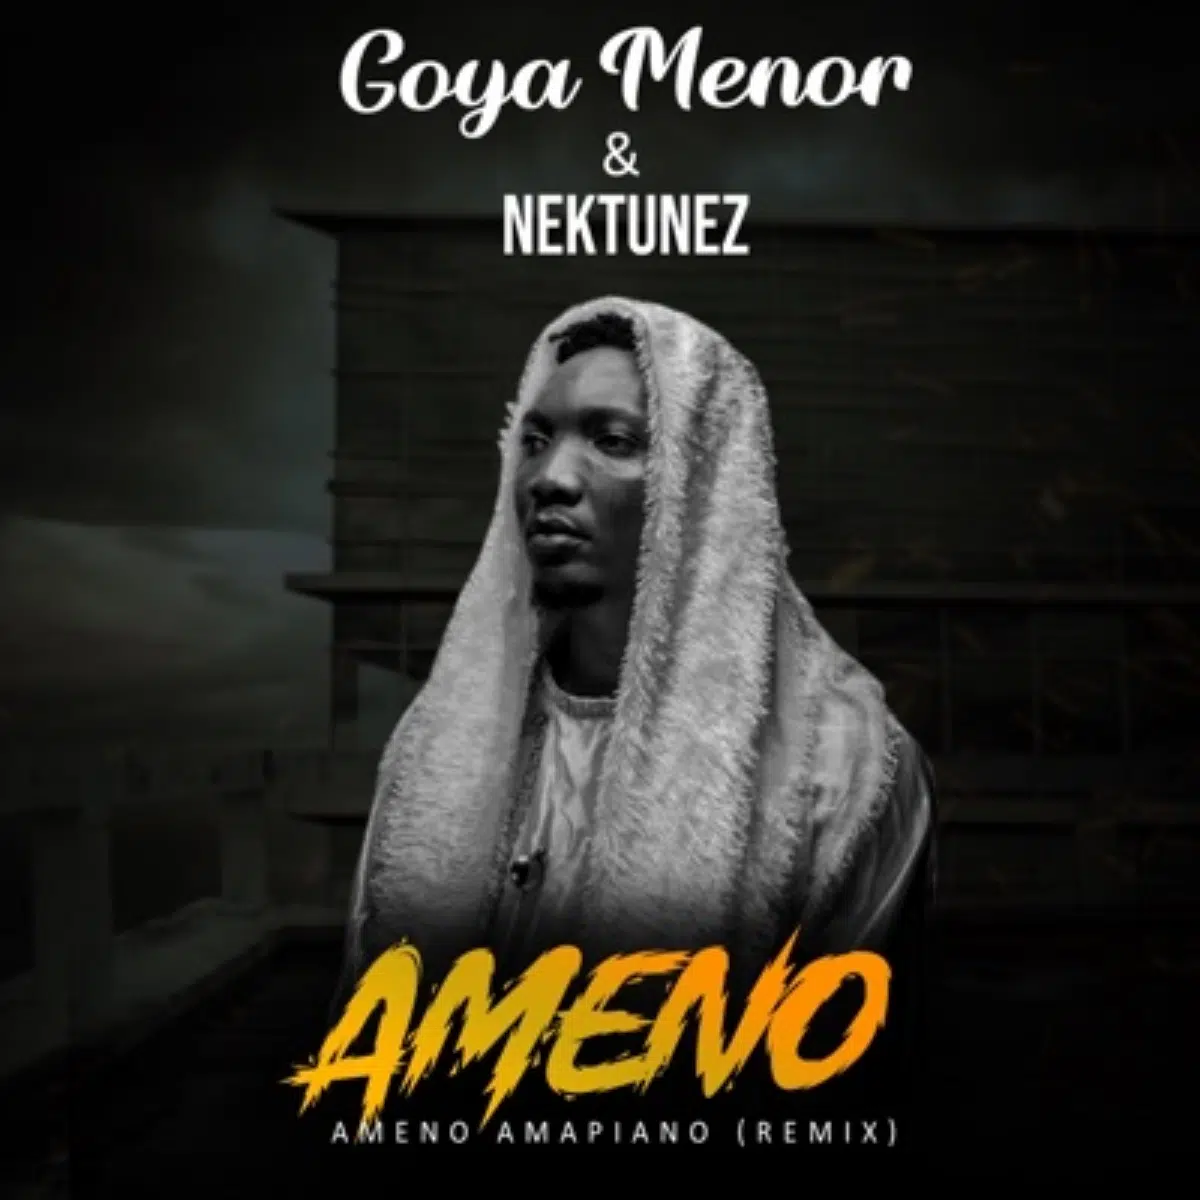 DOWNLOAD: Goya Menor & Nektunez – “Ameno Amapiano Remix” (You Wanna Bamba) Mp3